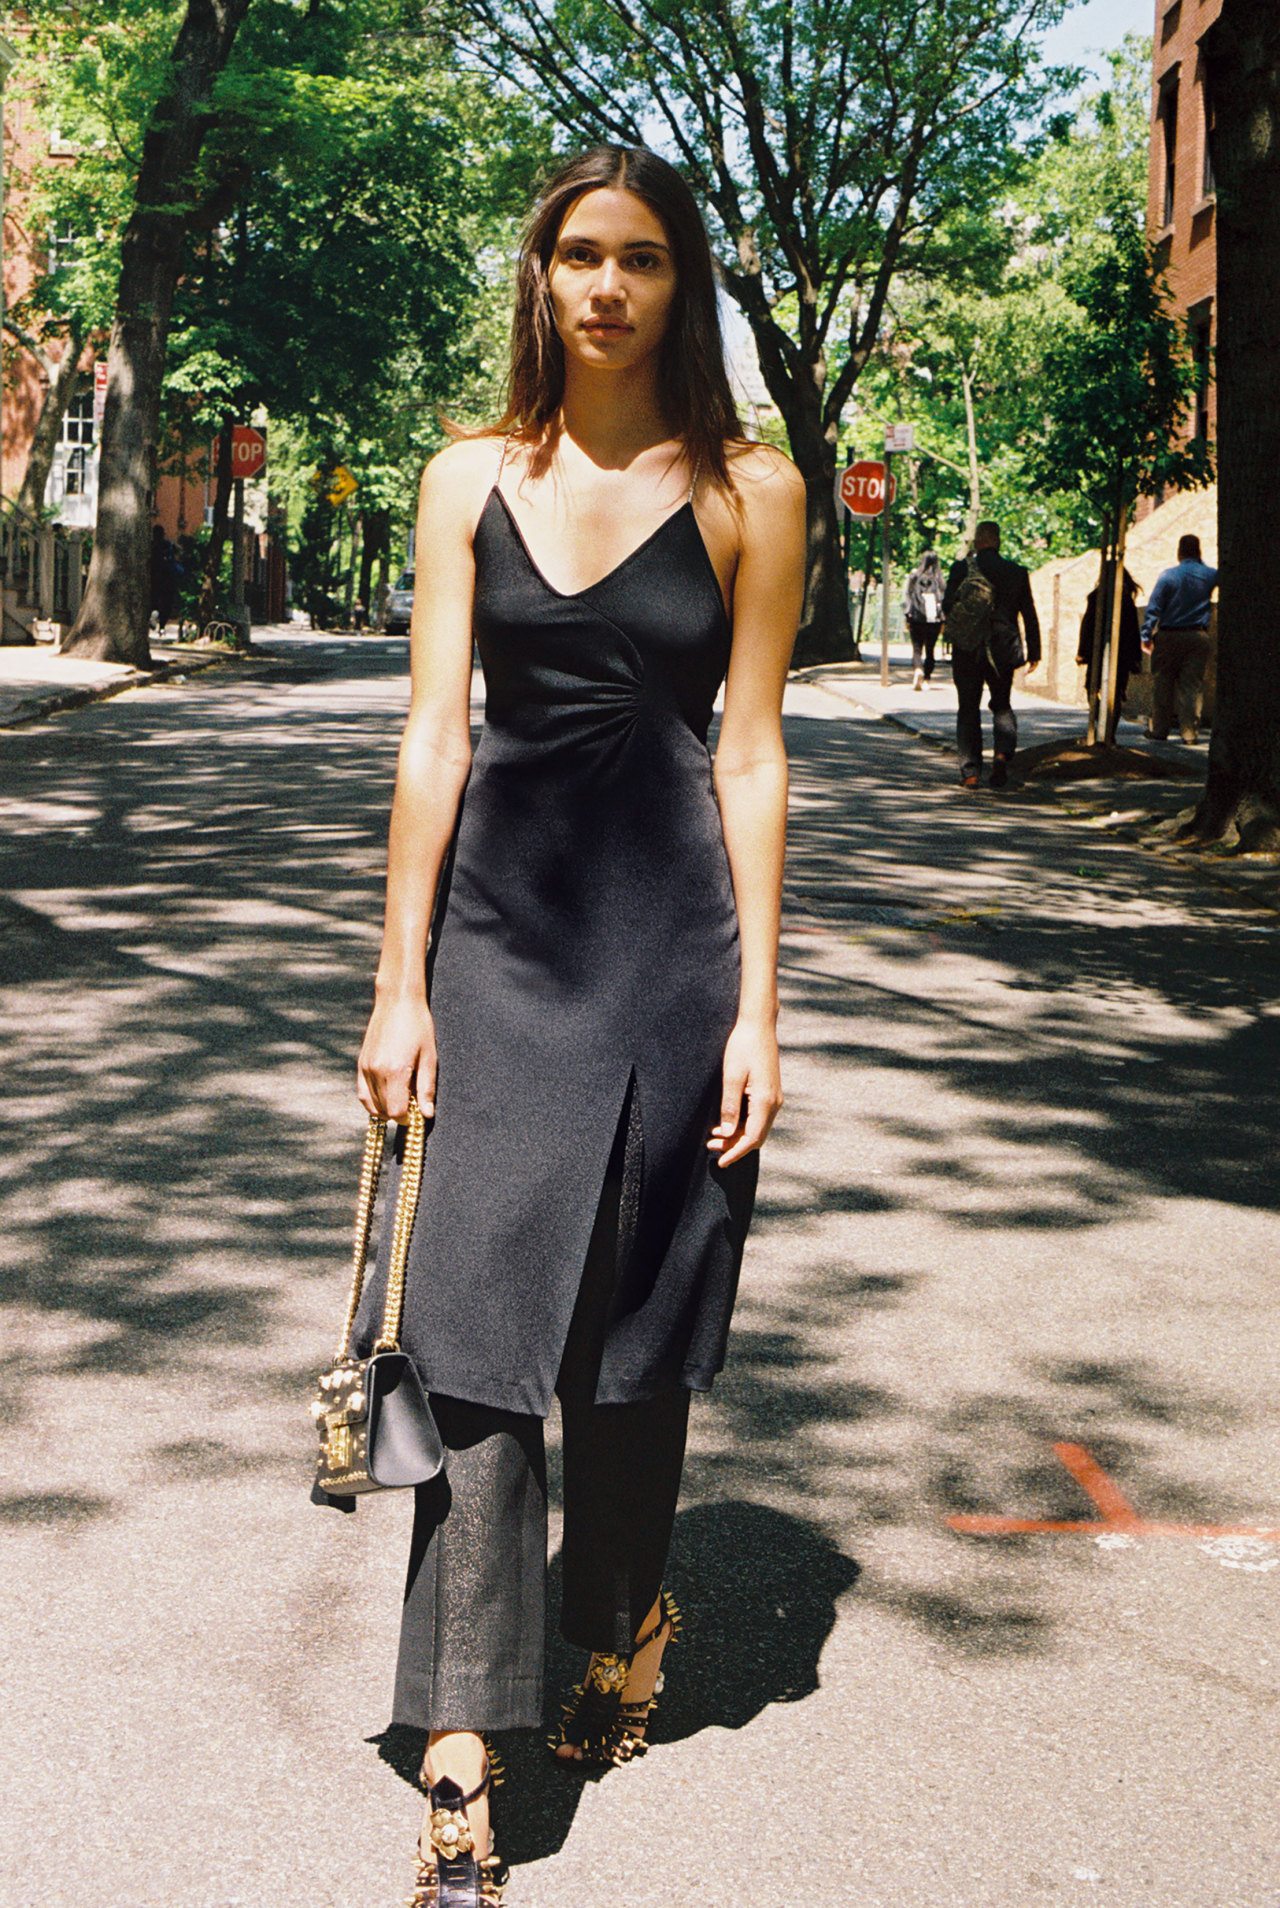 Kaya Wilkins in a vintage black dress and